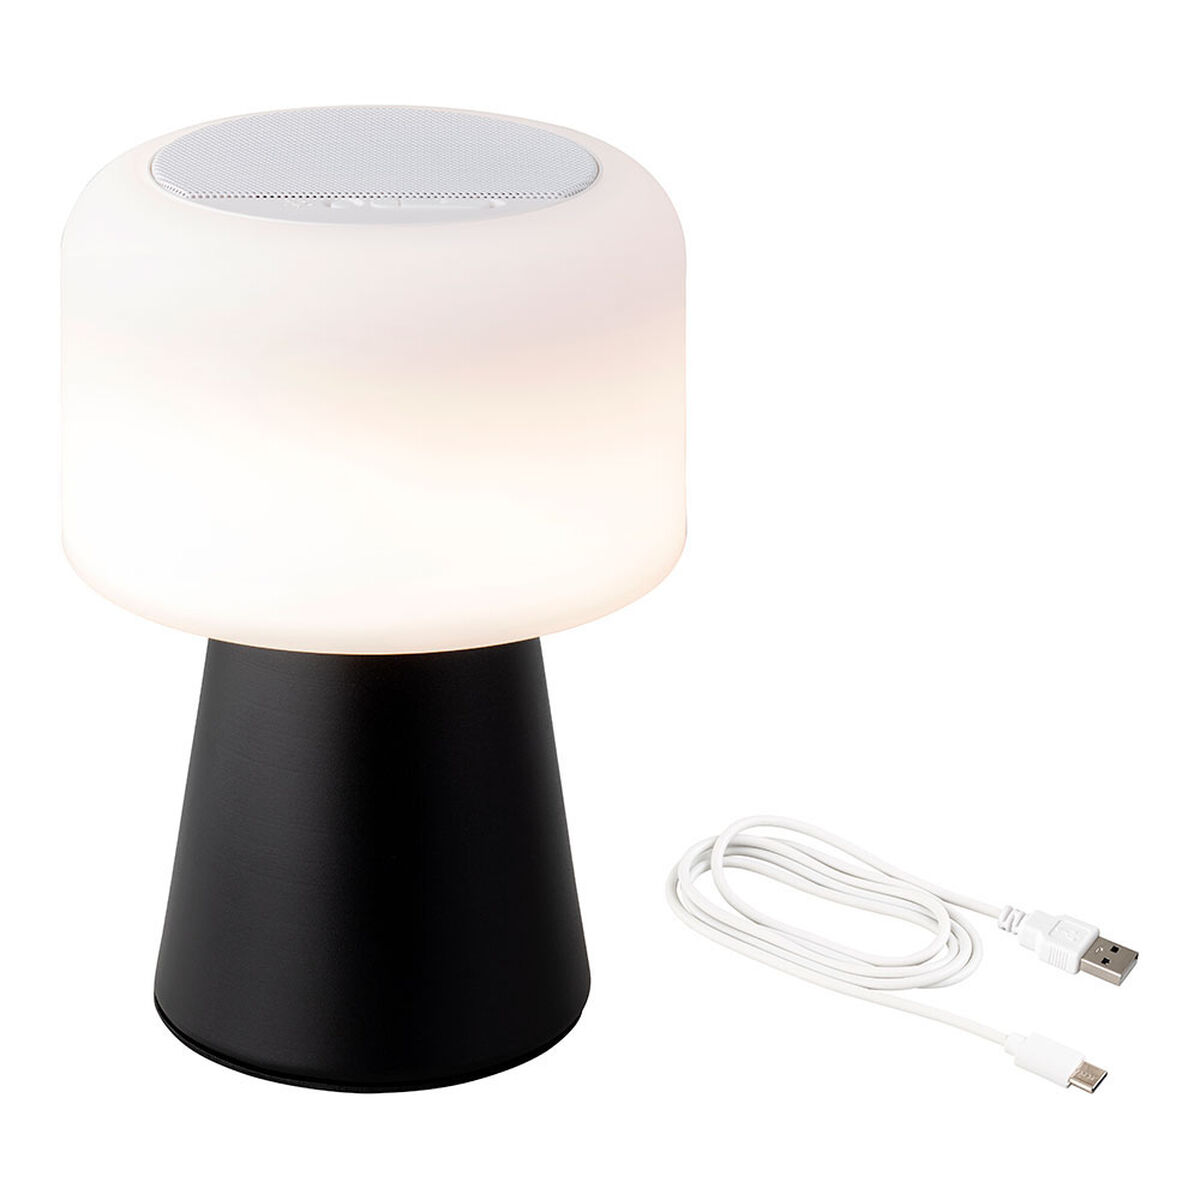 LED-lampe med Bluetooth-højttaler og trådløs oplader Lumineo 894415 Sort 22,5 cm Genopladelig